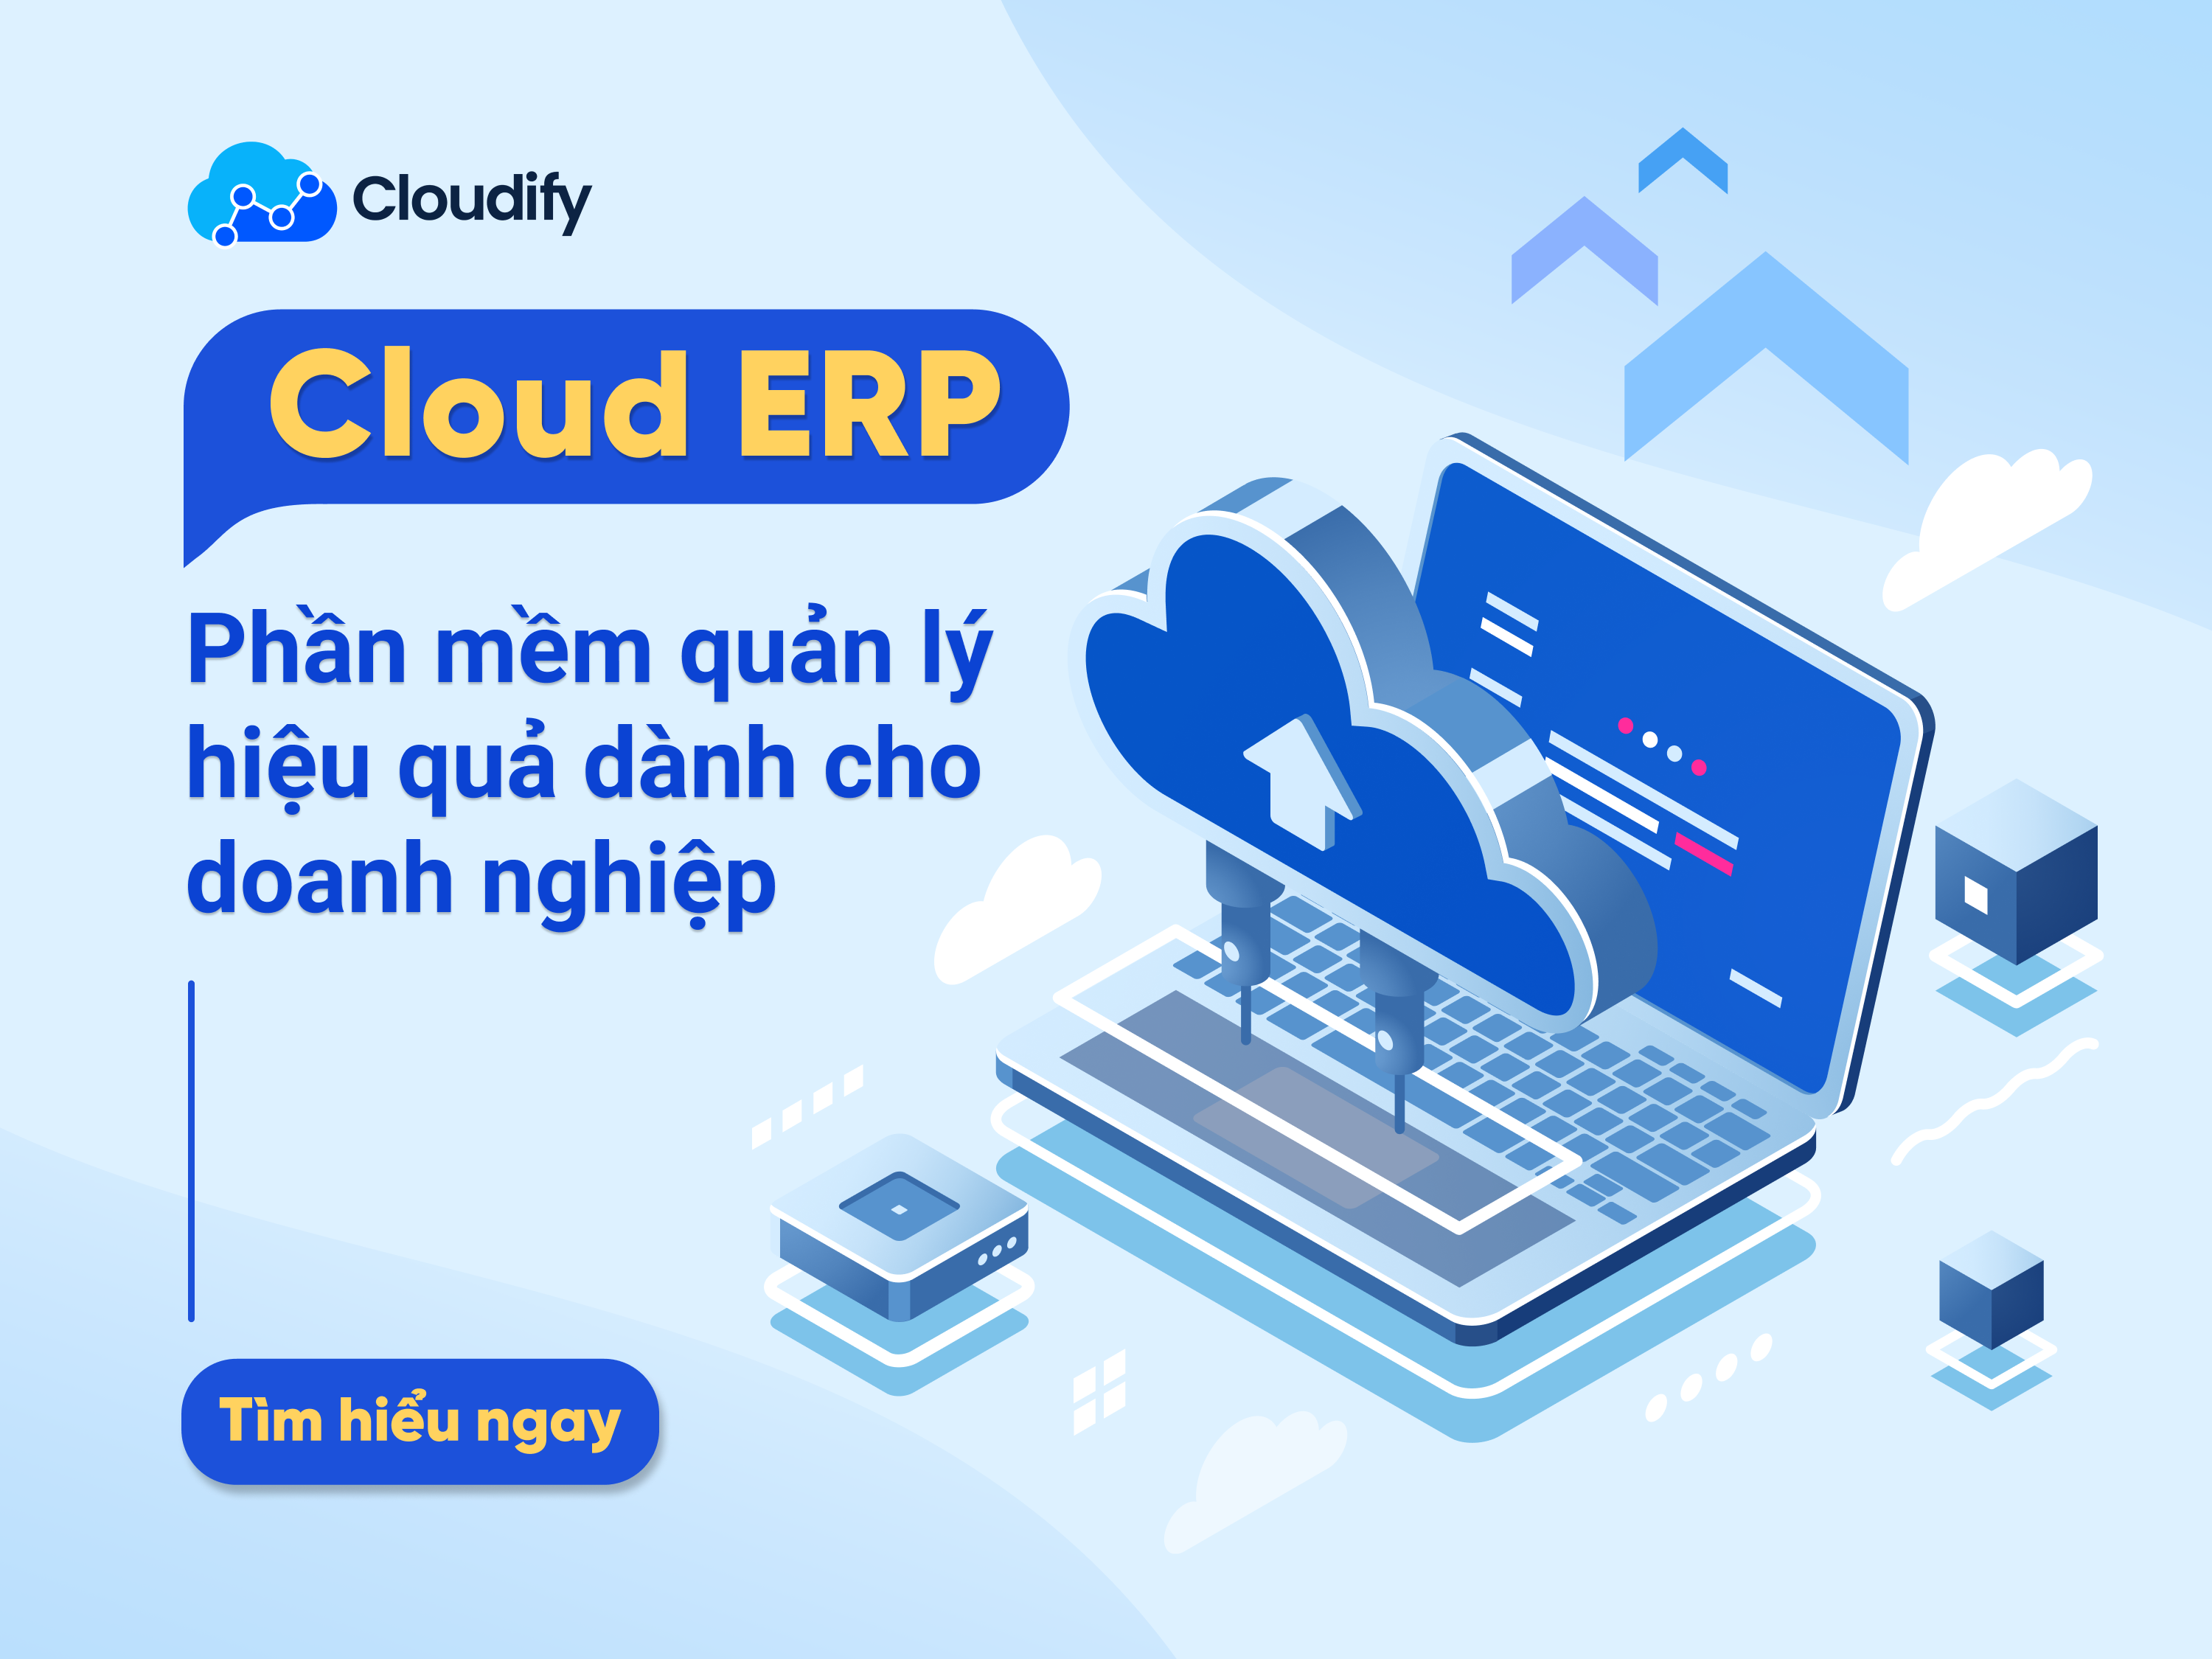 Cloud ERP - Phần mềm quản lý hiệu quả dành cho doanh nghiệp